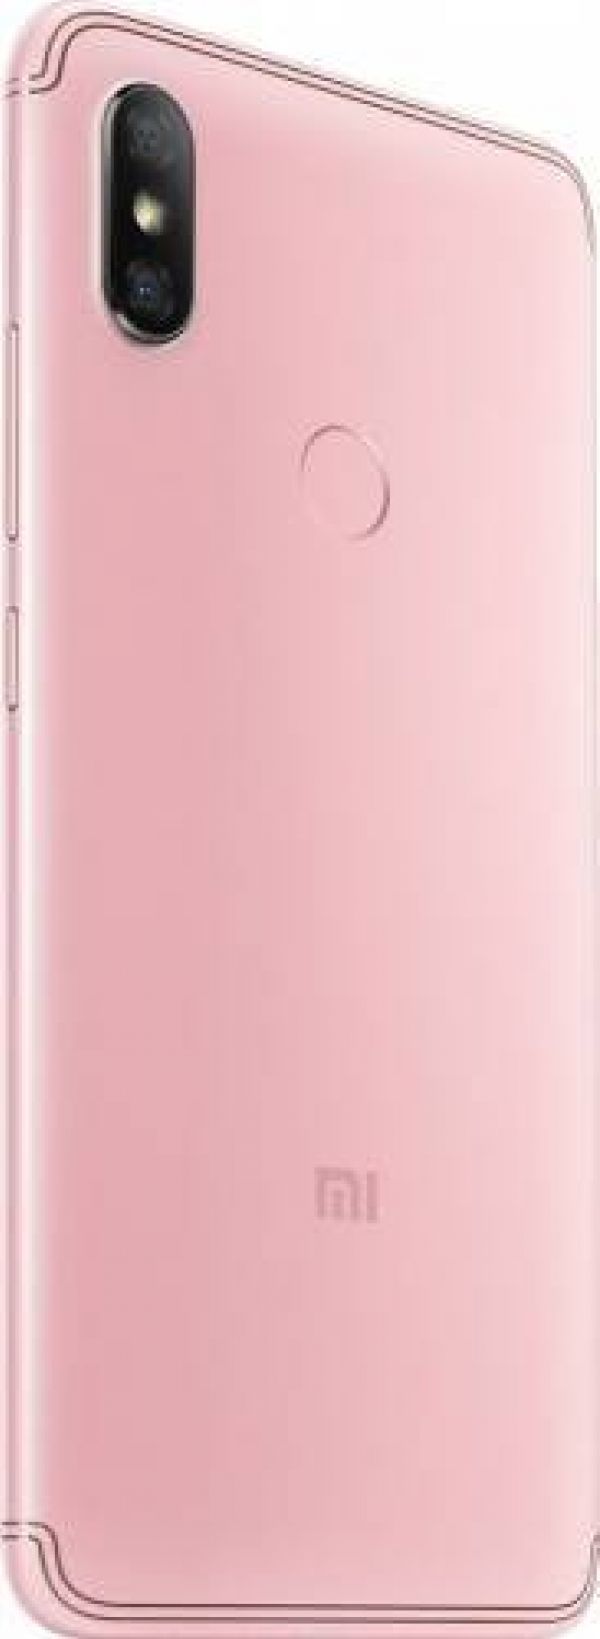  Telefon mobil Xiaomi Redmi S2 32GB Dual Sim 4G Pink